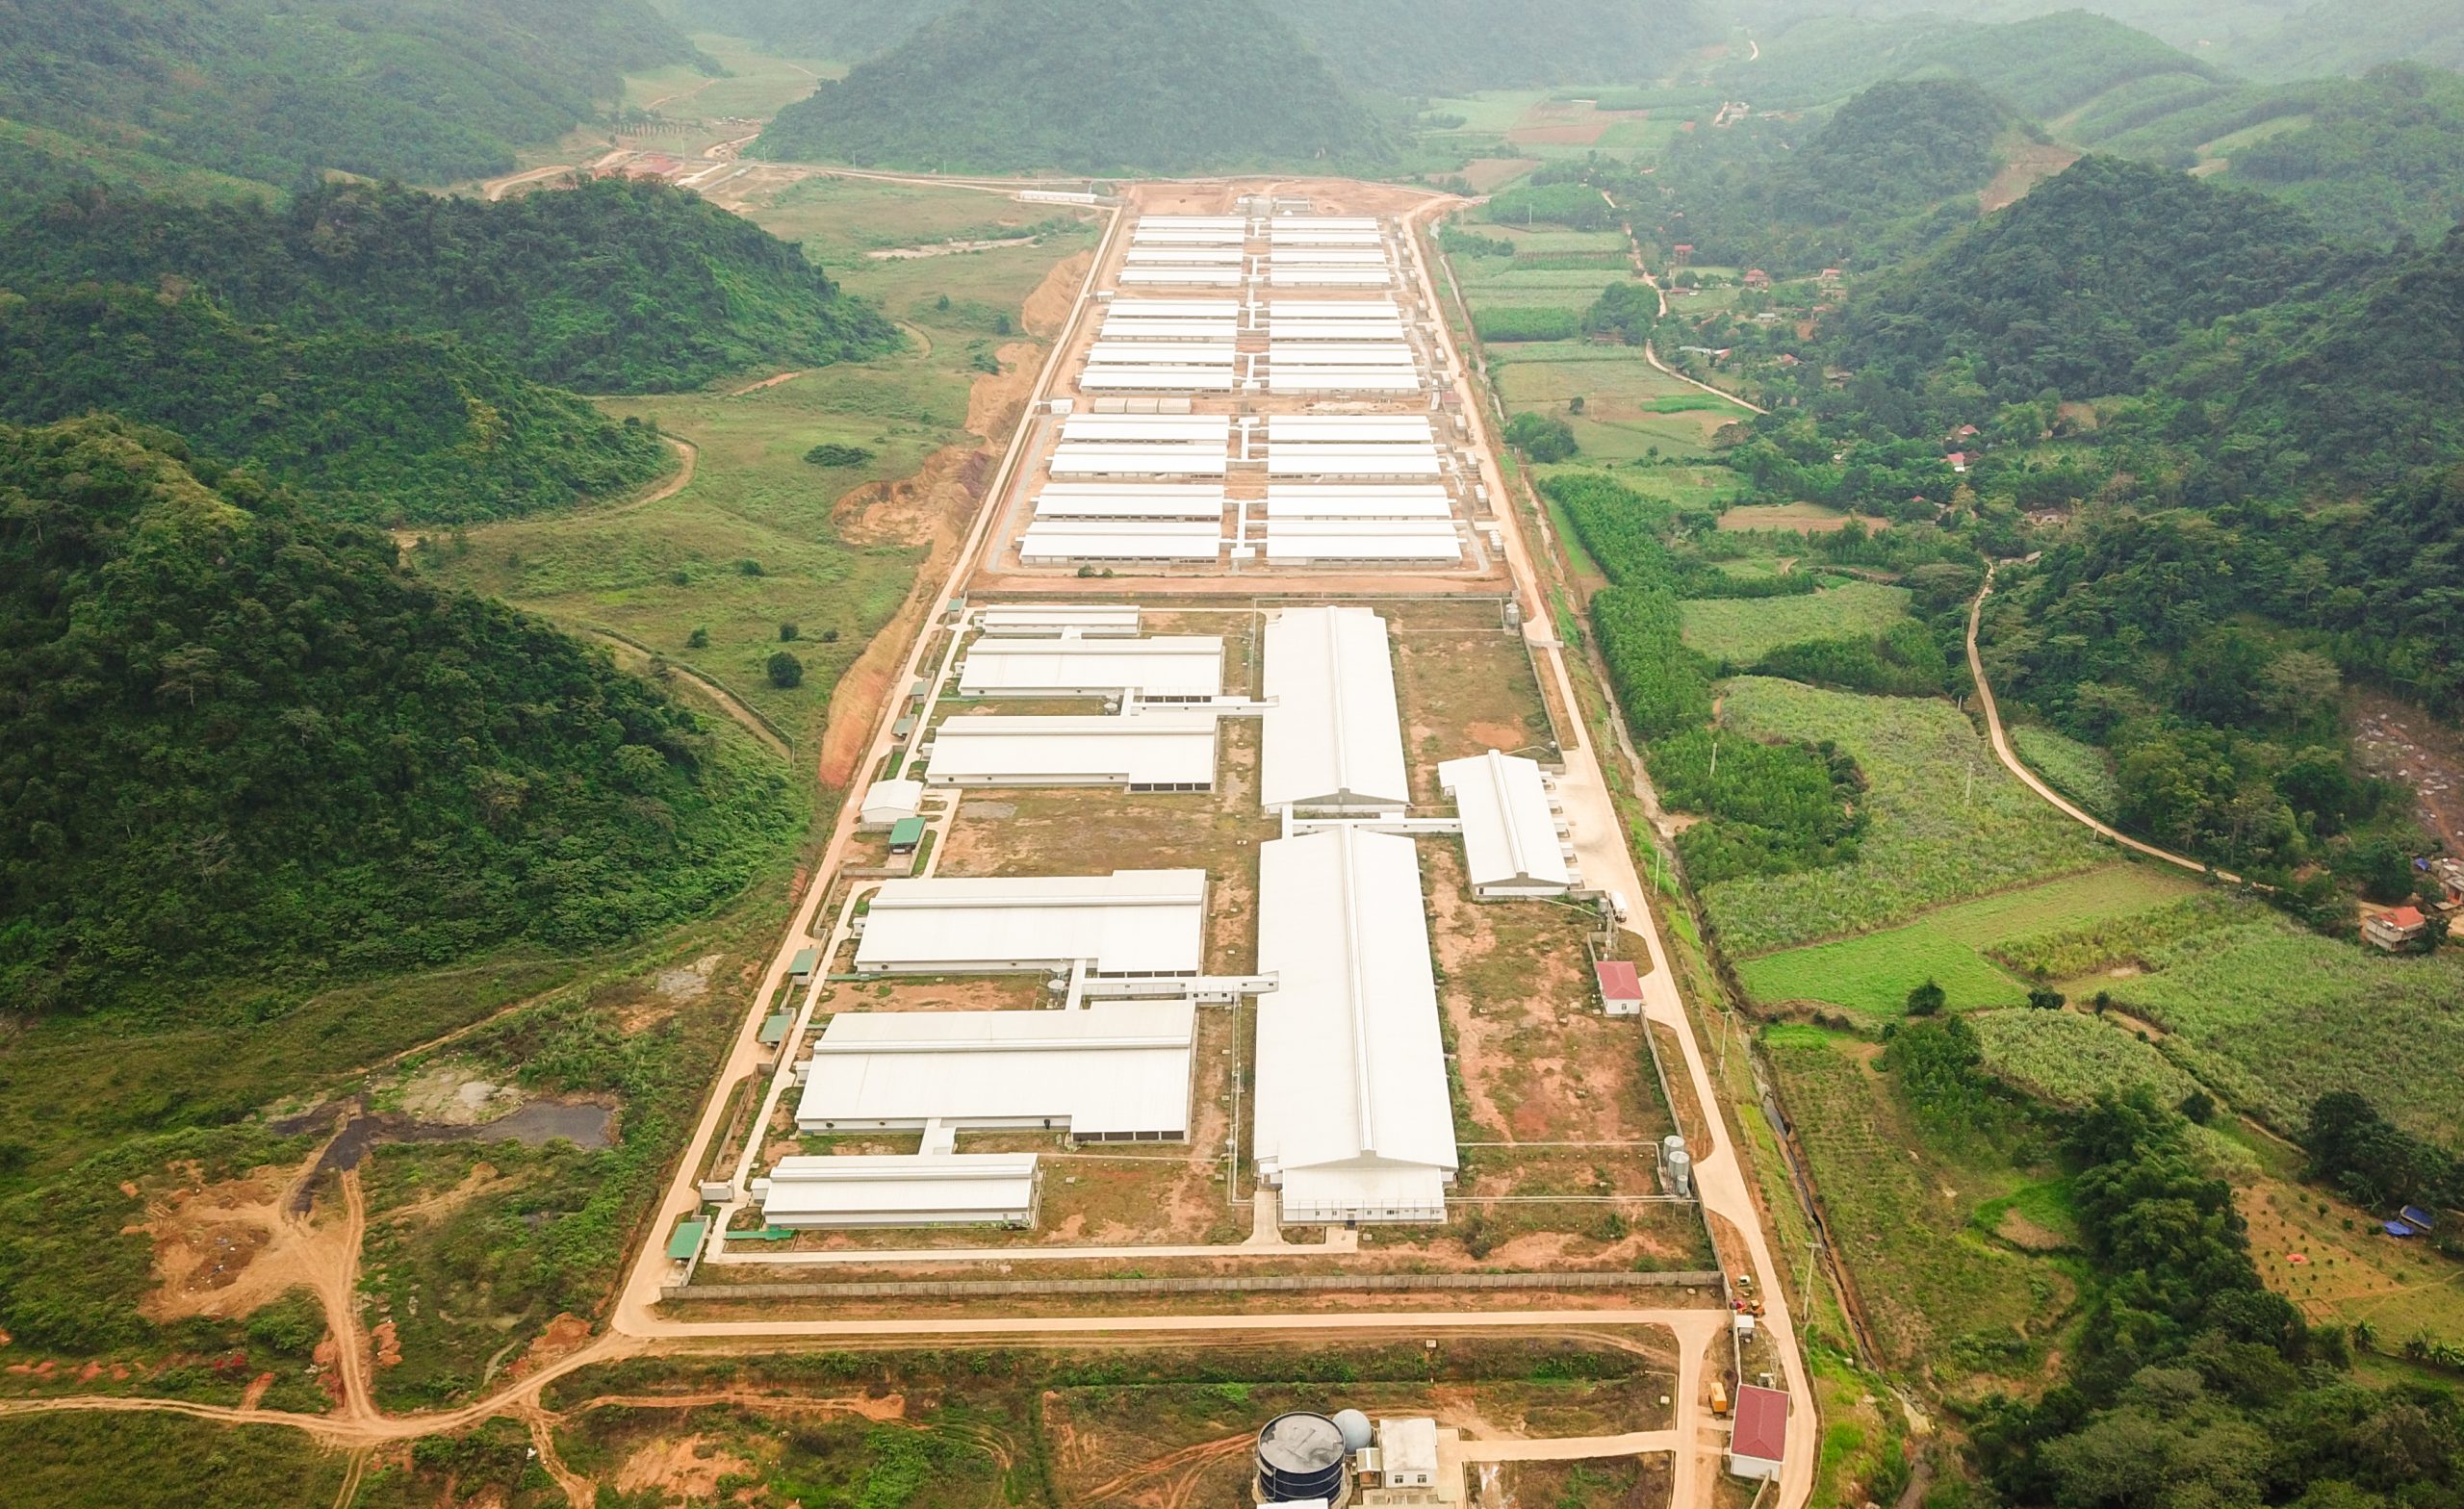 Trang trại lợn 72000 con tập đoàn NewHope tại Thạch Tượng - Thạch Thành - Thanh Hóa